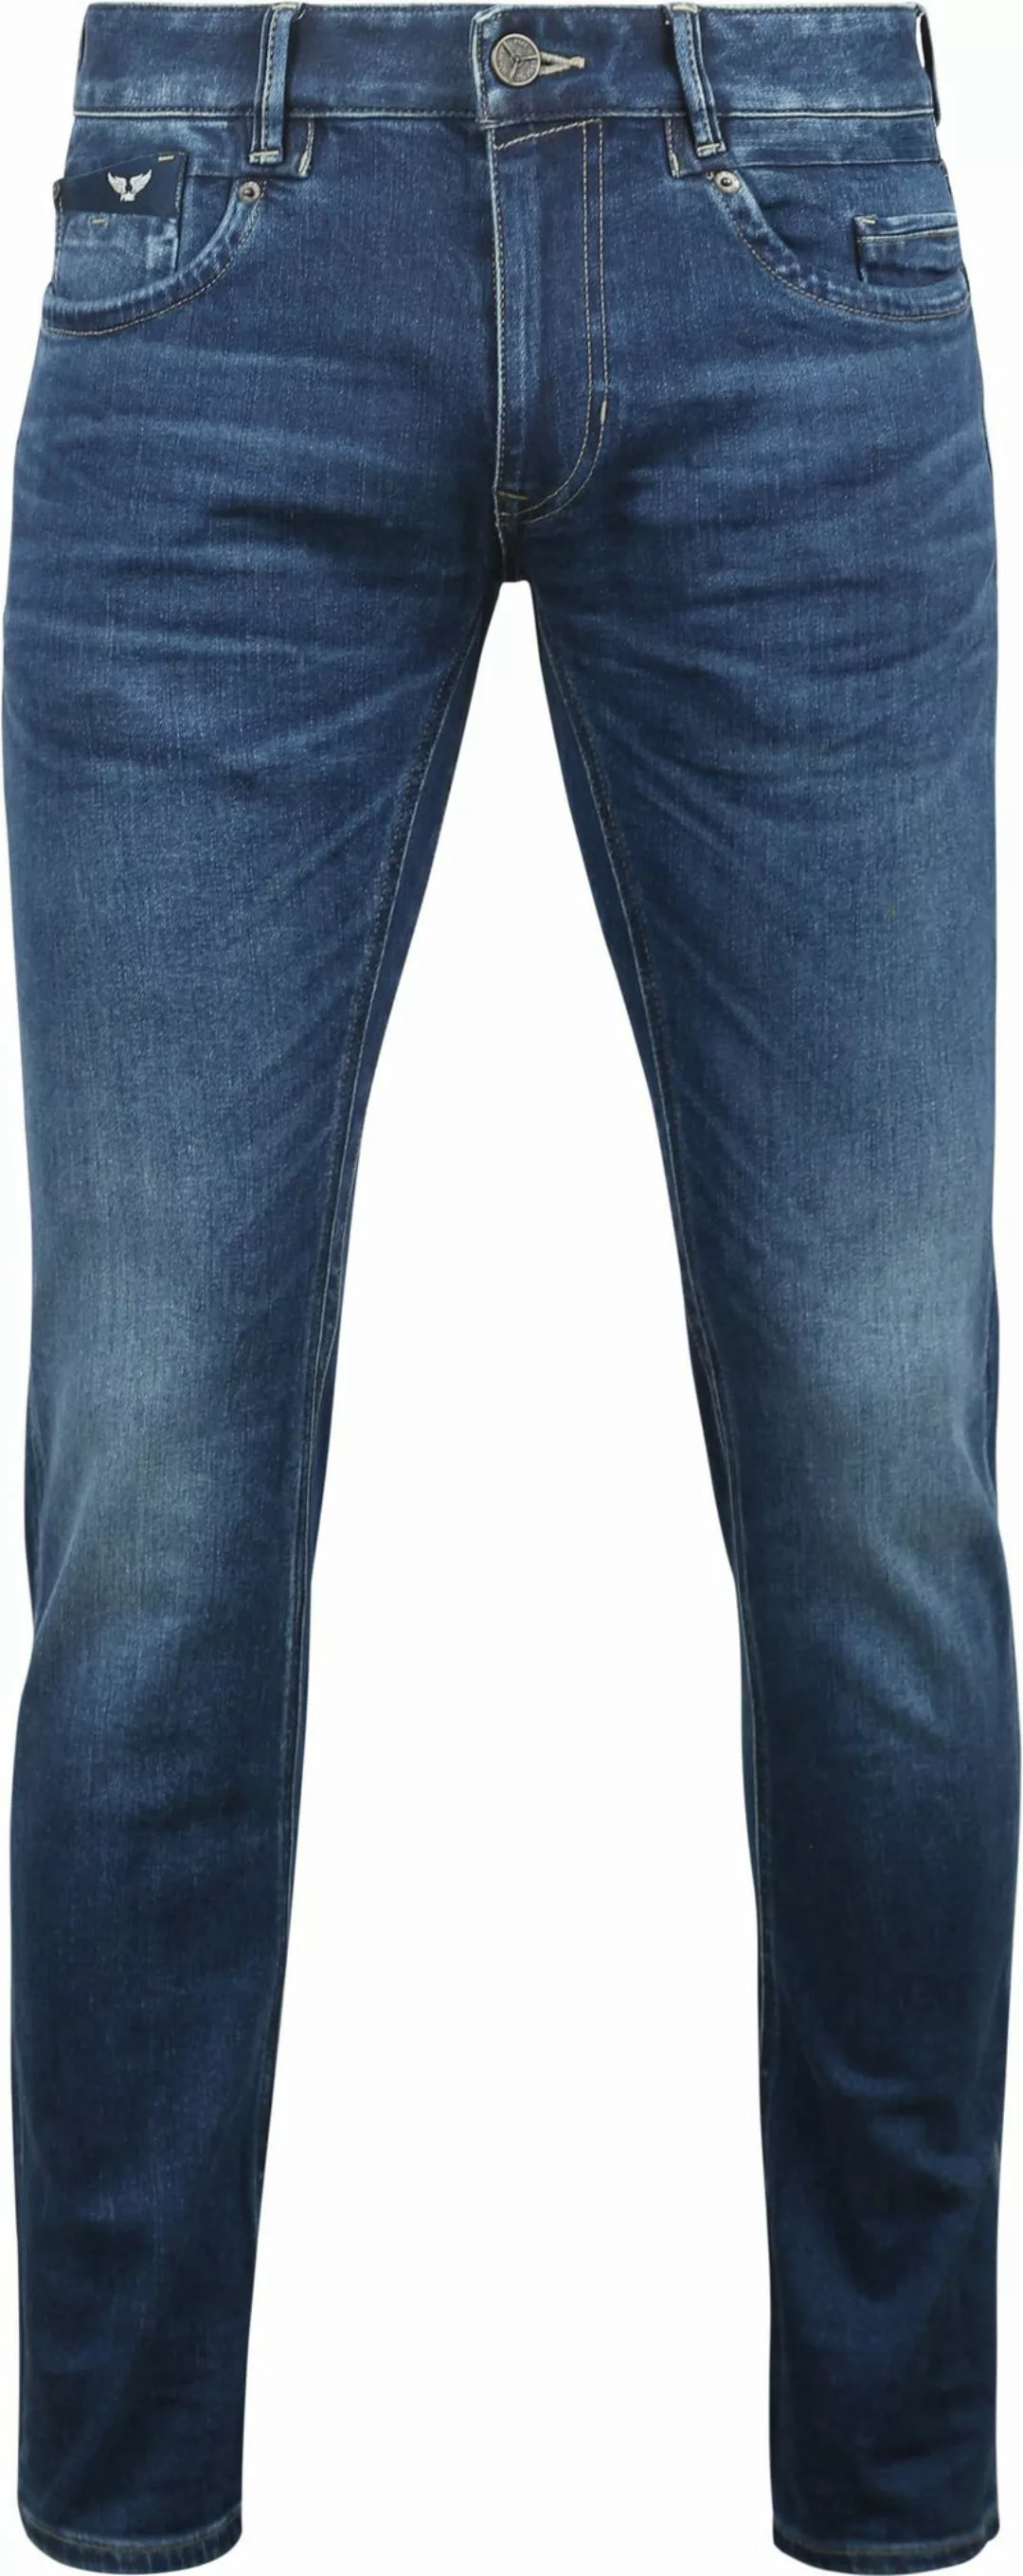 PME Legend Commander 3.0 Jeans Blau TBM - Größe W 35 - L 36 günstig online kaufen